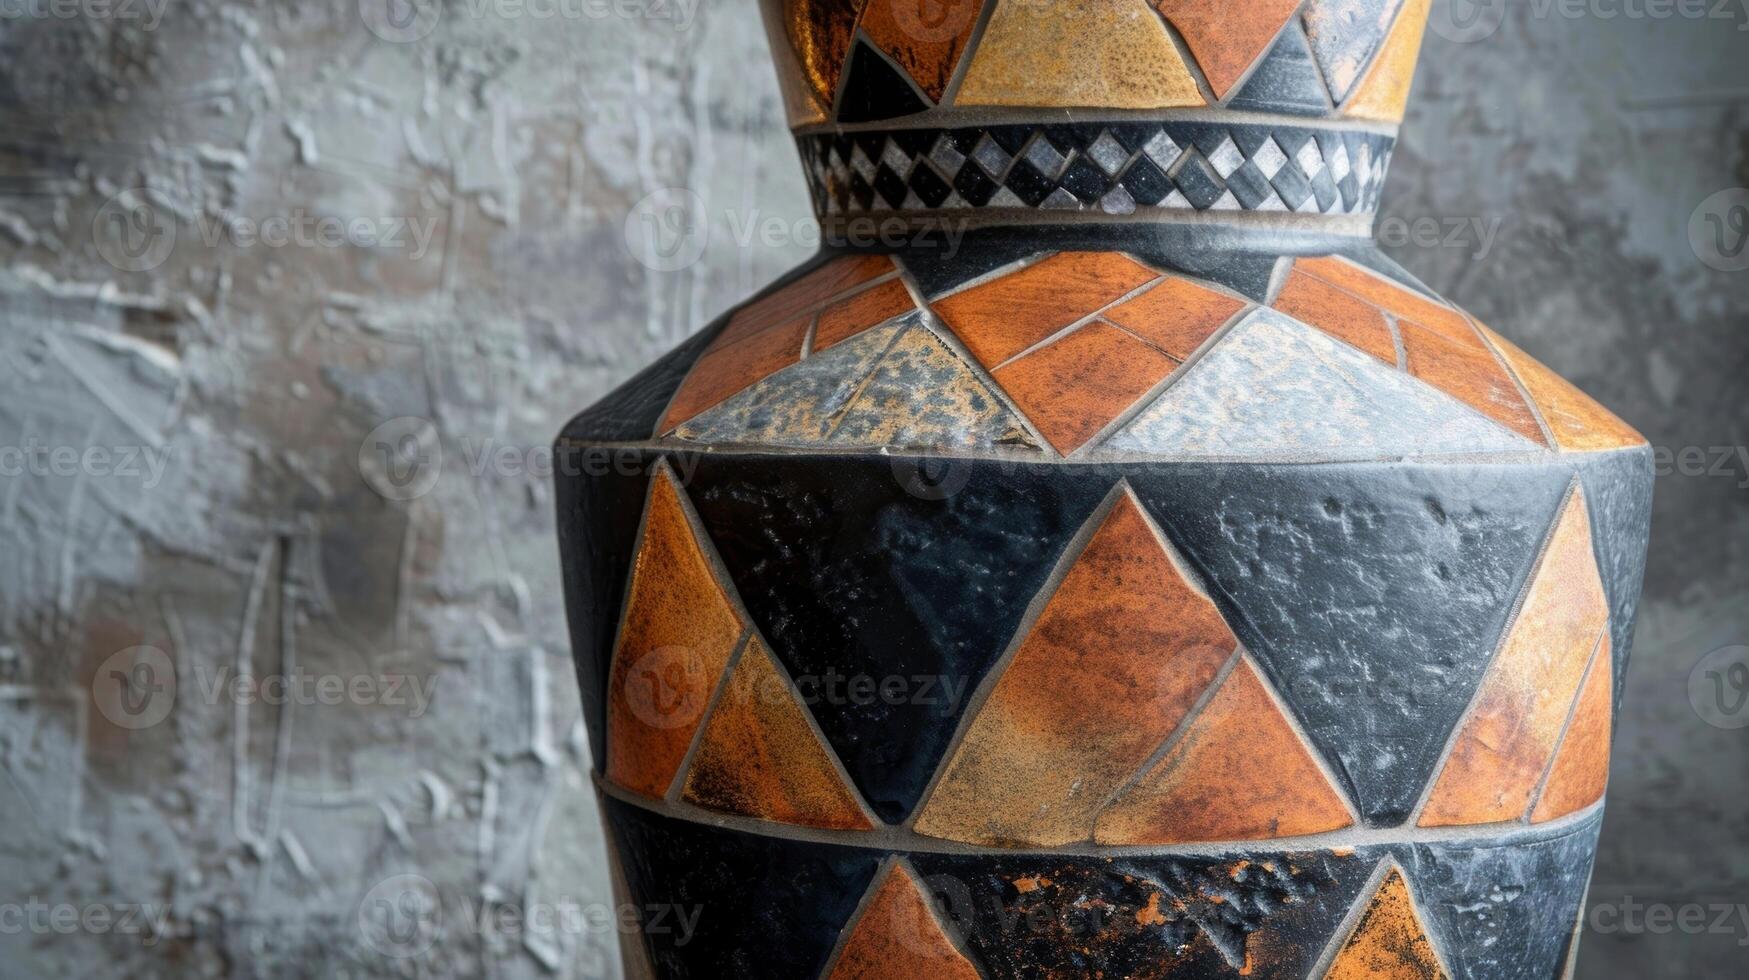 en mosaik- mosaik- vas med stor keramisk plattor i värma toner formning en geometrisk mönster runt om de bas. foto